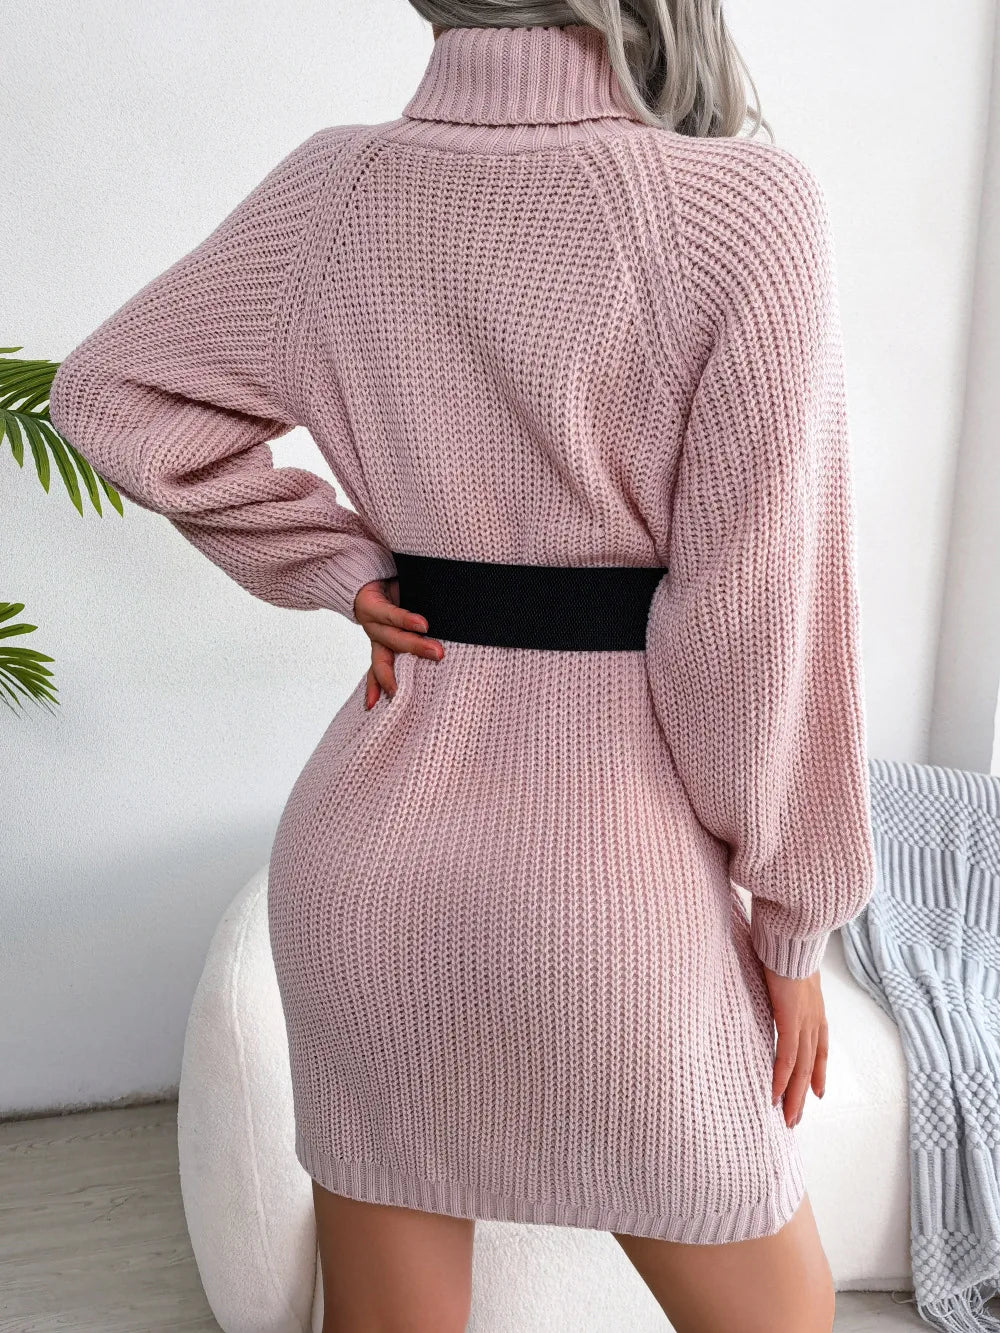 Turtleneck Sweater Dress: Elegant Long Sleeve Pullover for Women